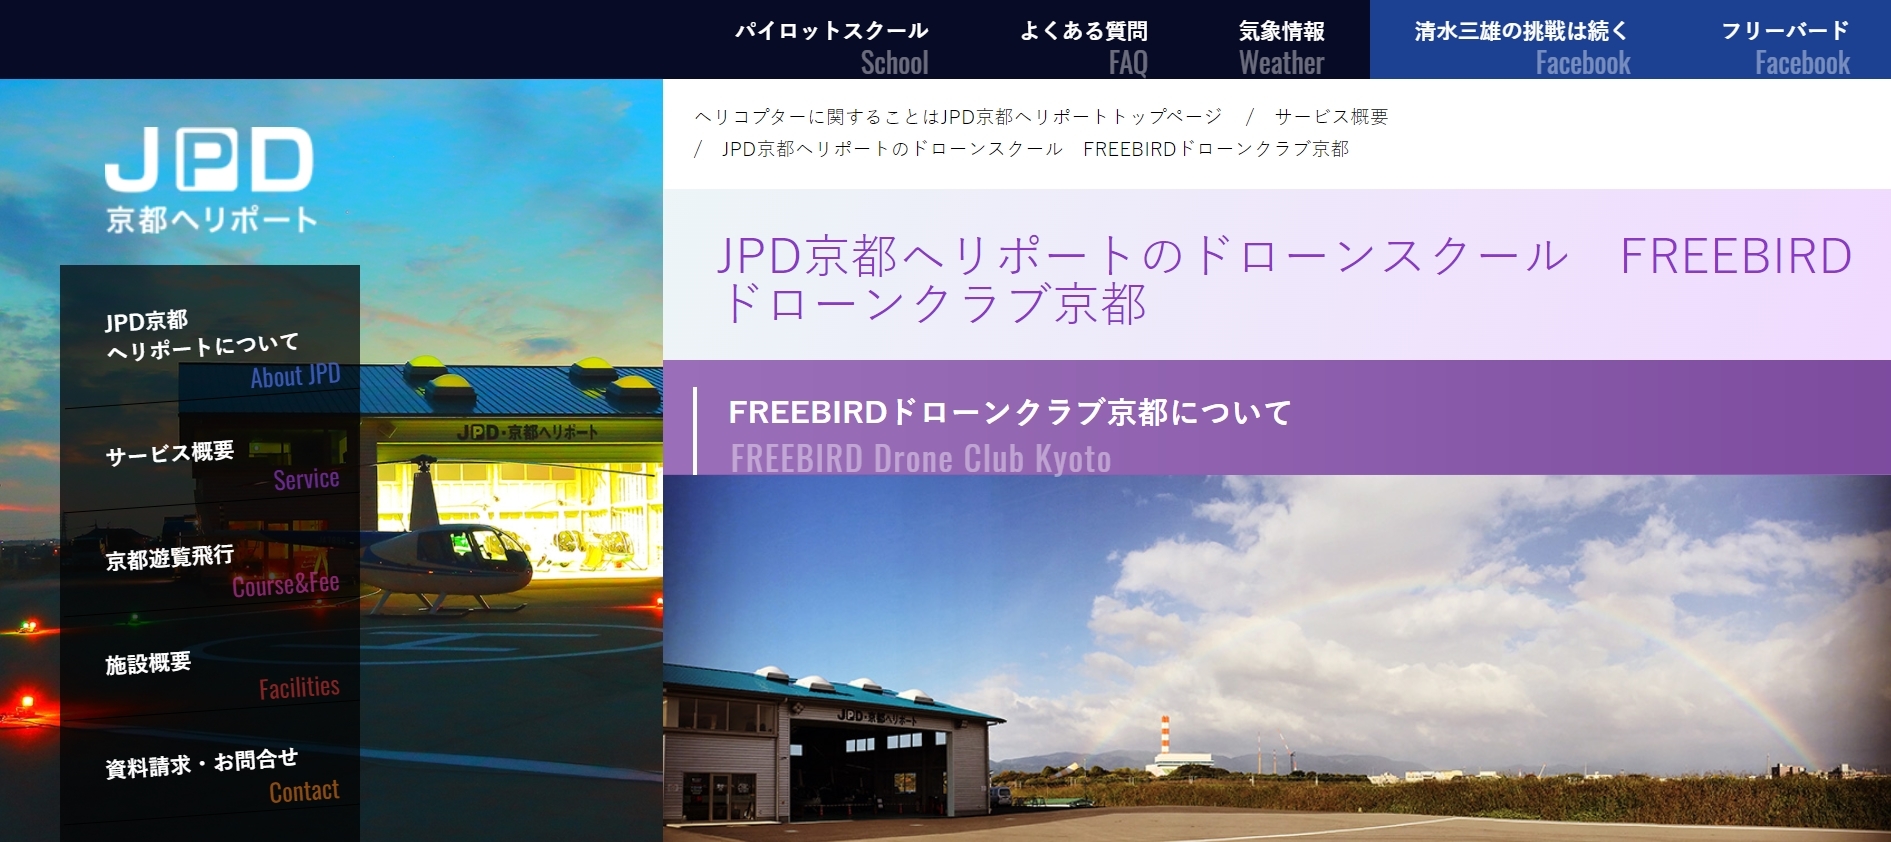 JPD京都ヘリポート・FREEBIRD京都ドローンクラブ